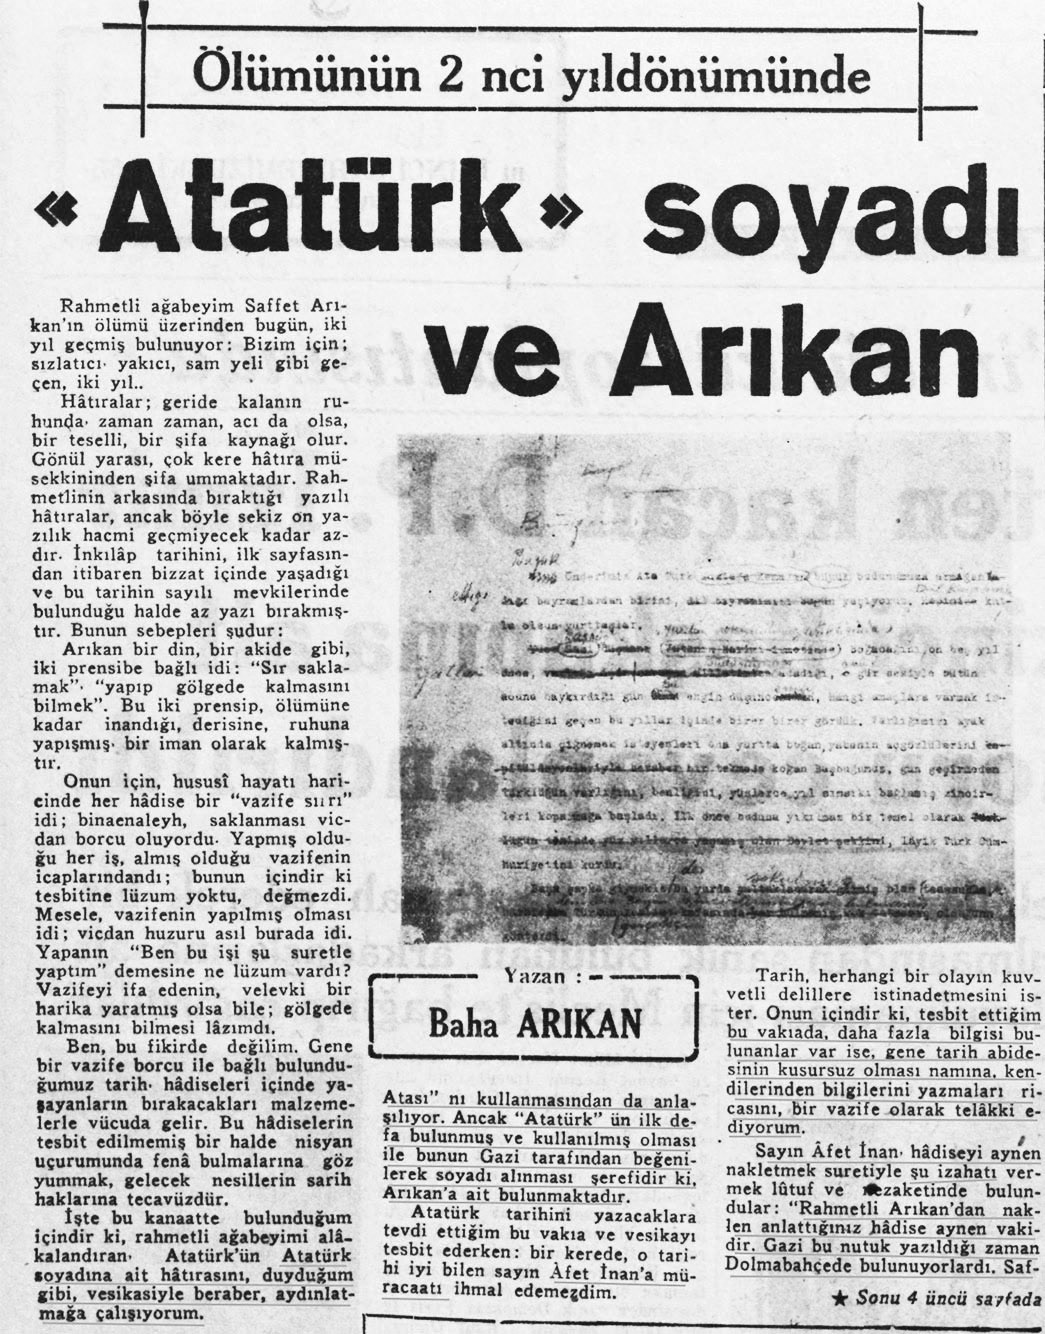 için bir nutuk hazırlamam lâzım geliyordu. Bu nutuk, müsveddede de görüldüğü gibi, "Ulu Önderimiz Atatürk Mustafa Kemal.." diye başlıyordu.